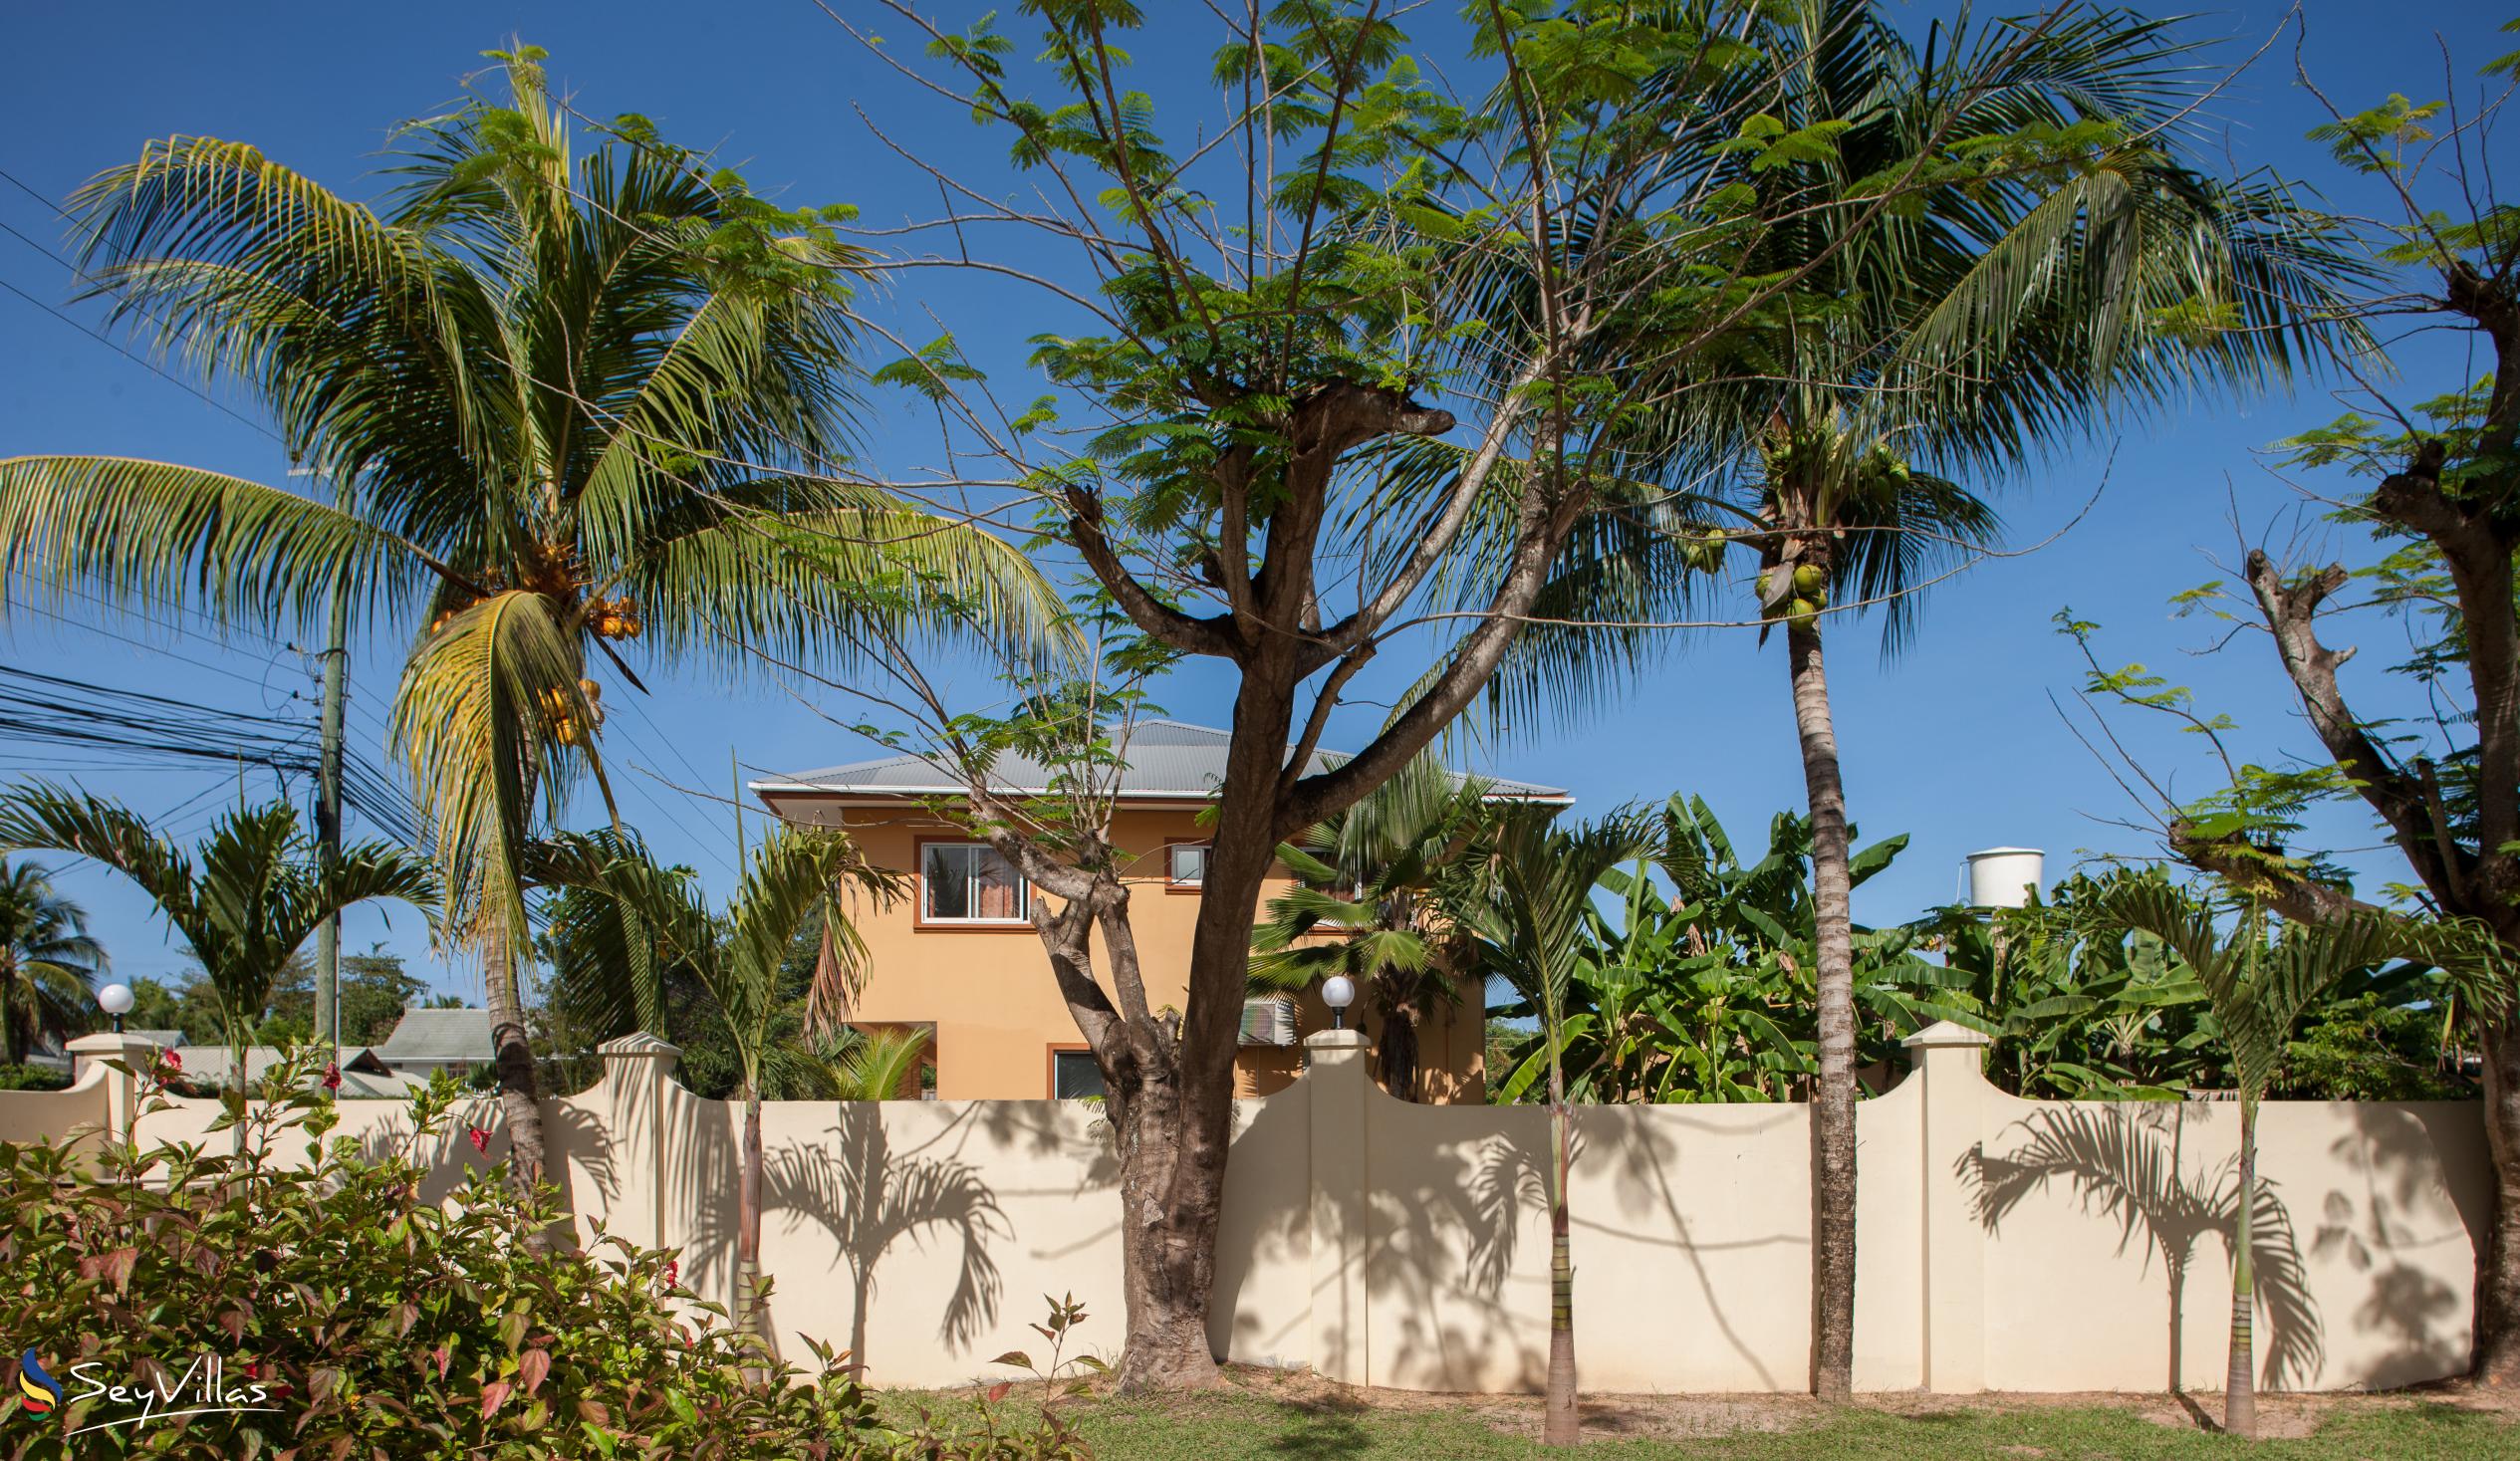 Photo 49: Villa Confort - Outdoor area - Praslin (Seychelles)